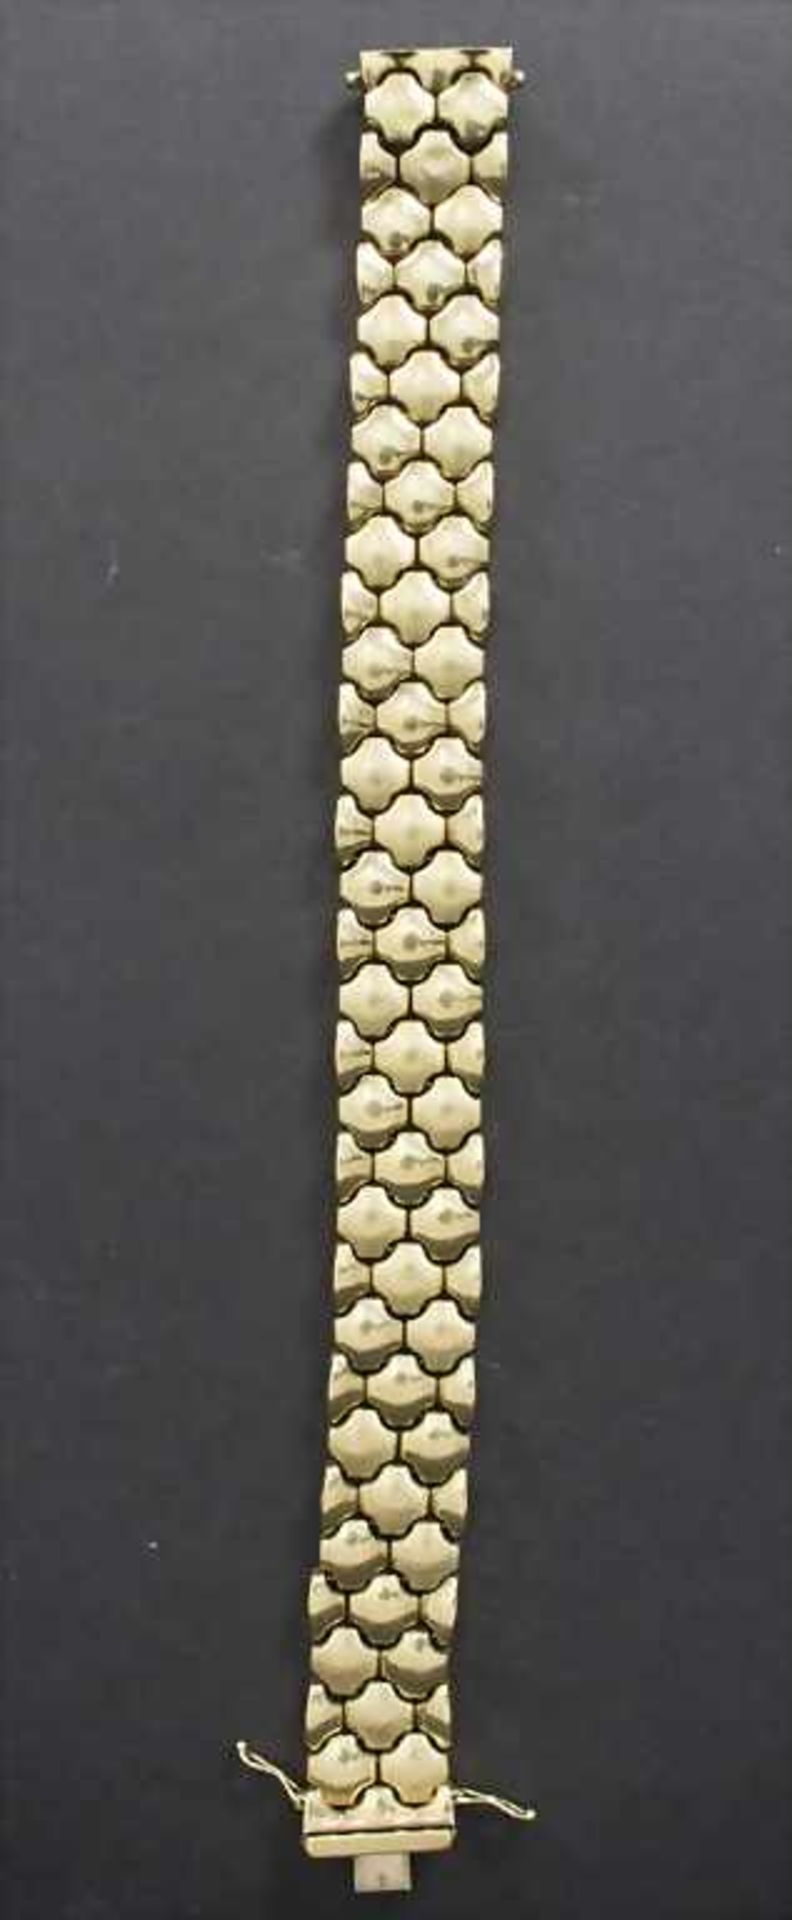 Goldarmband / A gold braceletMaterial: Gelbgold 585/000 14 Kt, Länge: 20,5 cm,Gewicht: 34,7 g,